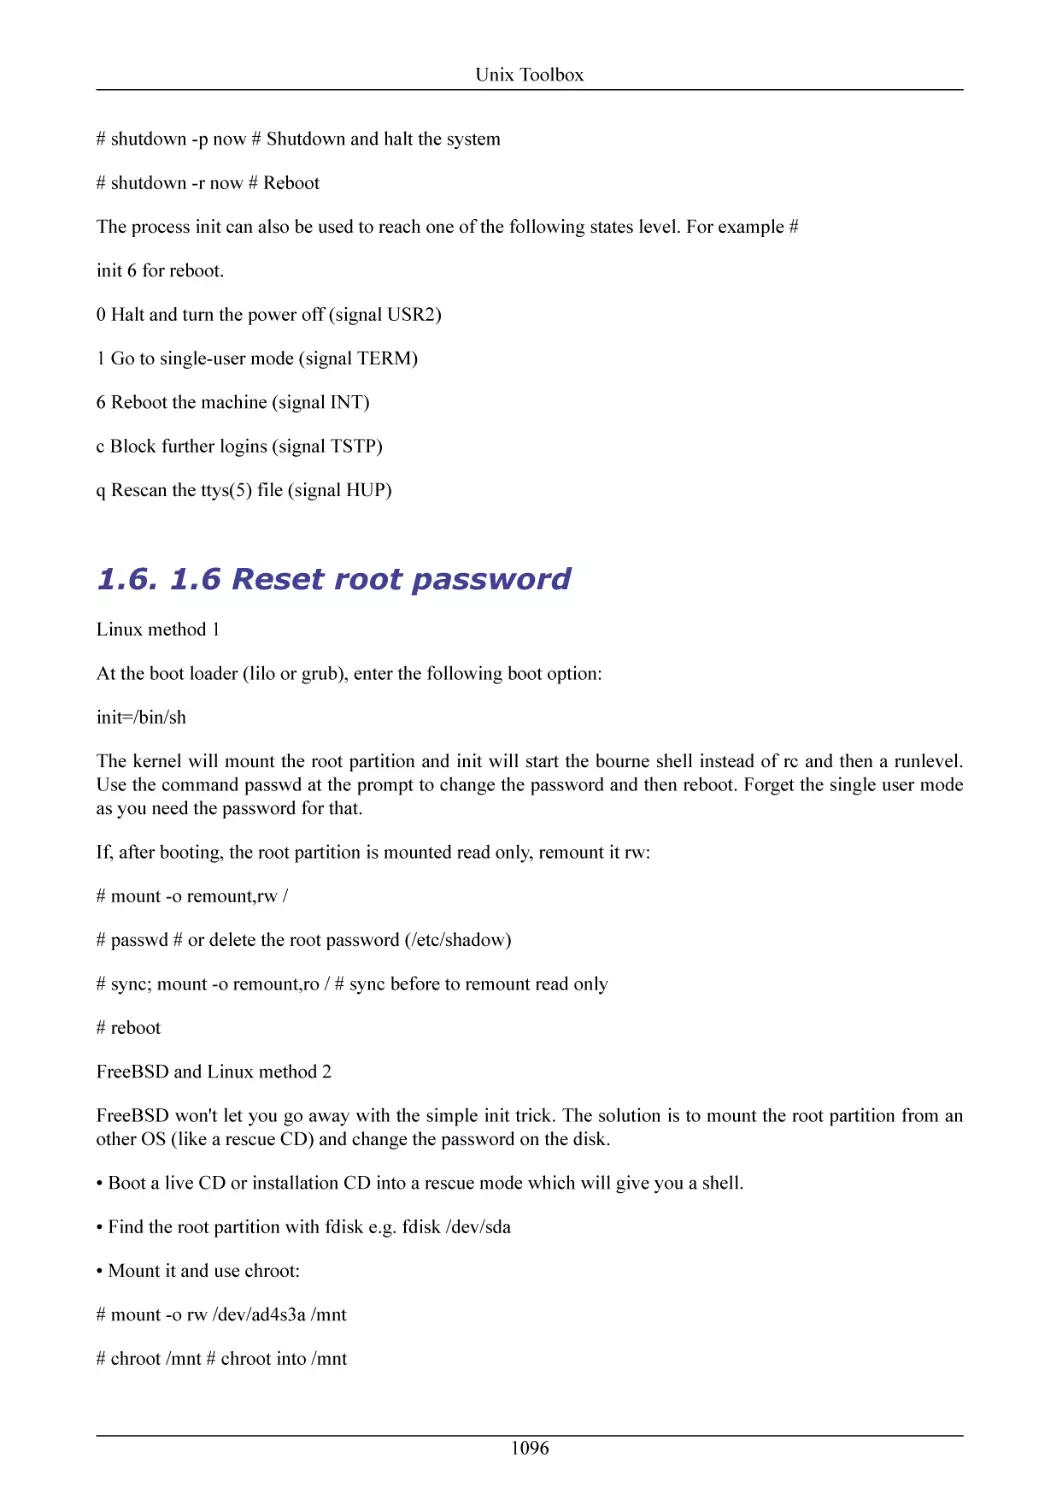 1.6 Reset root password